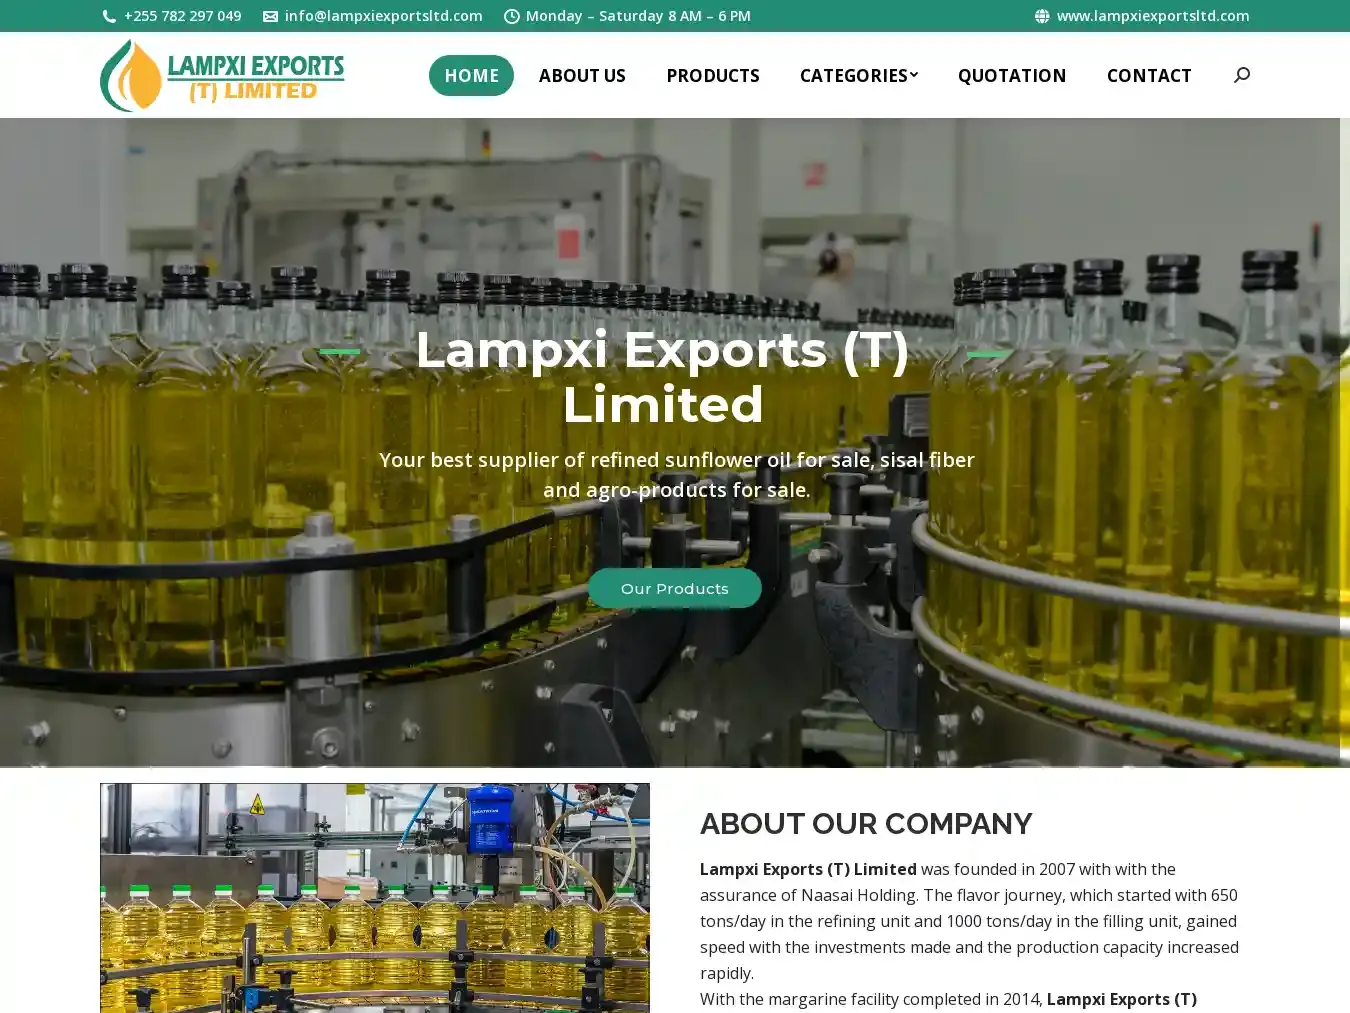 Lampxiexportsltd.com Fraudulent Non-Delivery website.